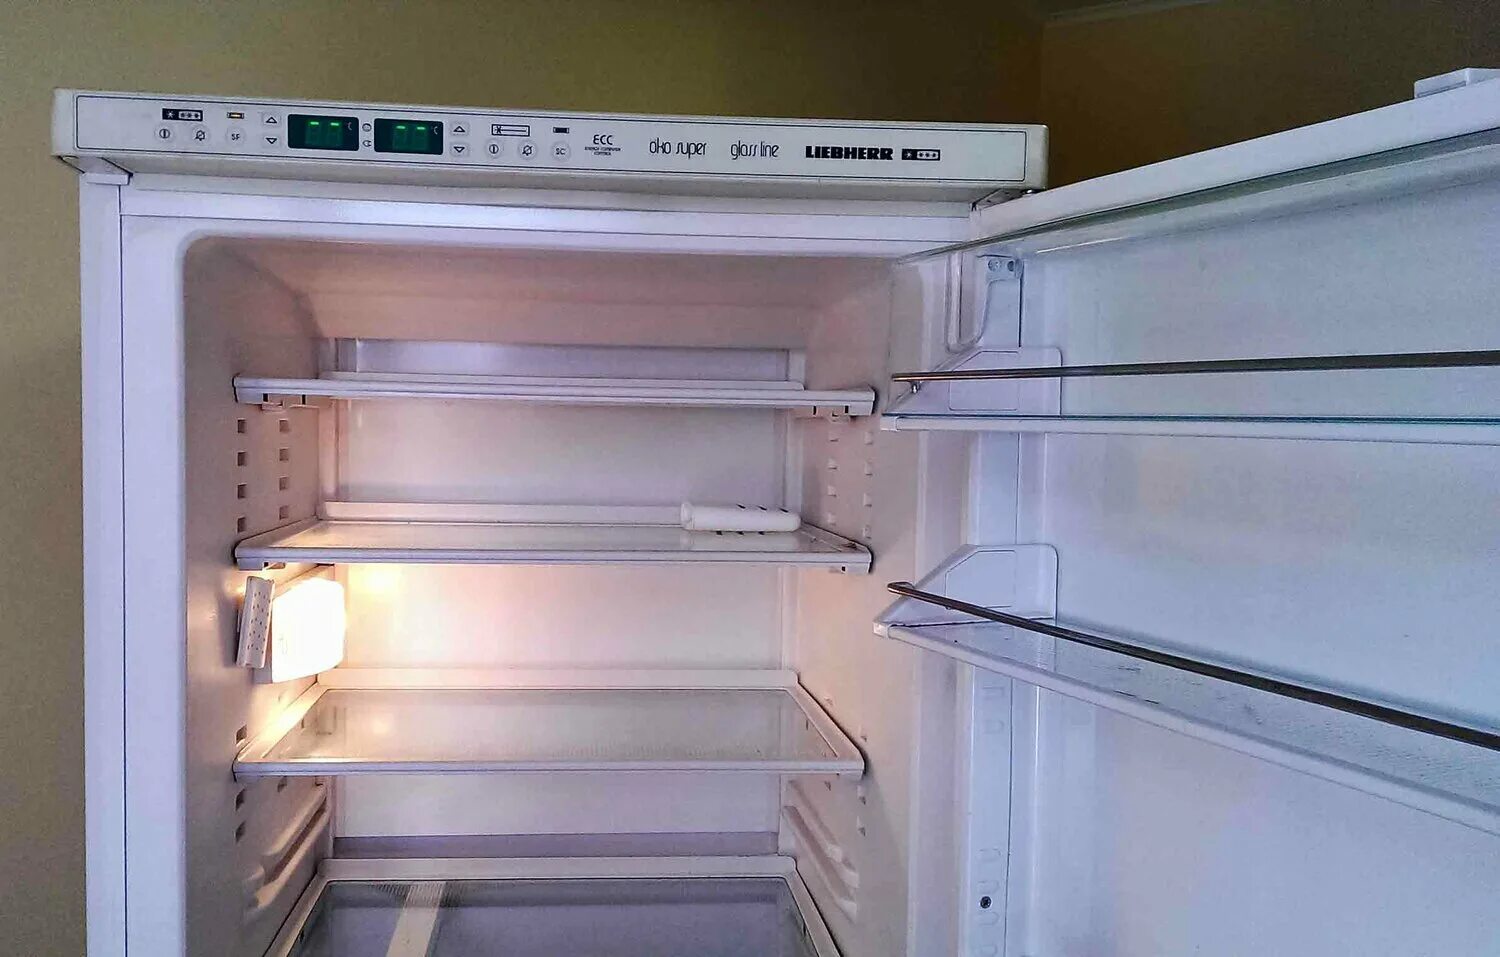 Ремонт либхер в москве на дому холодильников. Двухкомпрессорный холодильник Liebherr. Либхер двухкомпрессорный холодильник. KBES 3750 Liebherr. Siemens холодильник двухкомпрессорный.